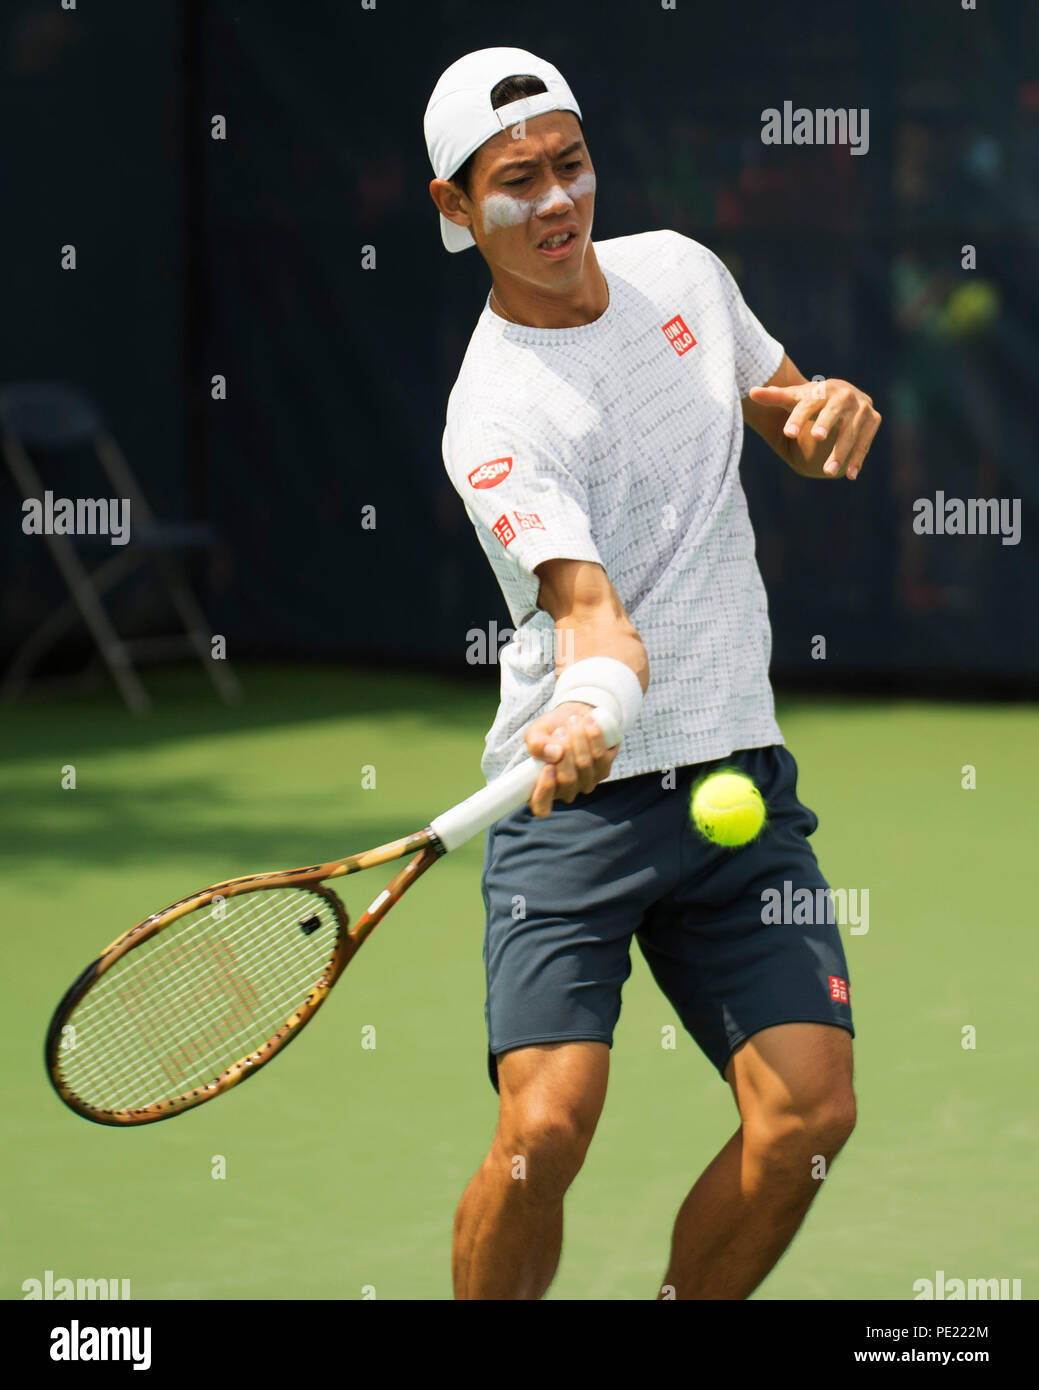 Ohio, USA, 11 agosto 2018: Kei Nishkori pratiche contro Andy Murray al sud occidentali in aperto Mason, Ohio, Stati Uniti d'America. Brent Clark/Alamy Live News Foto Stock